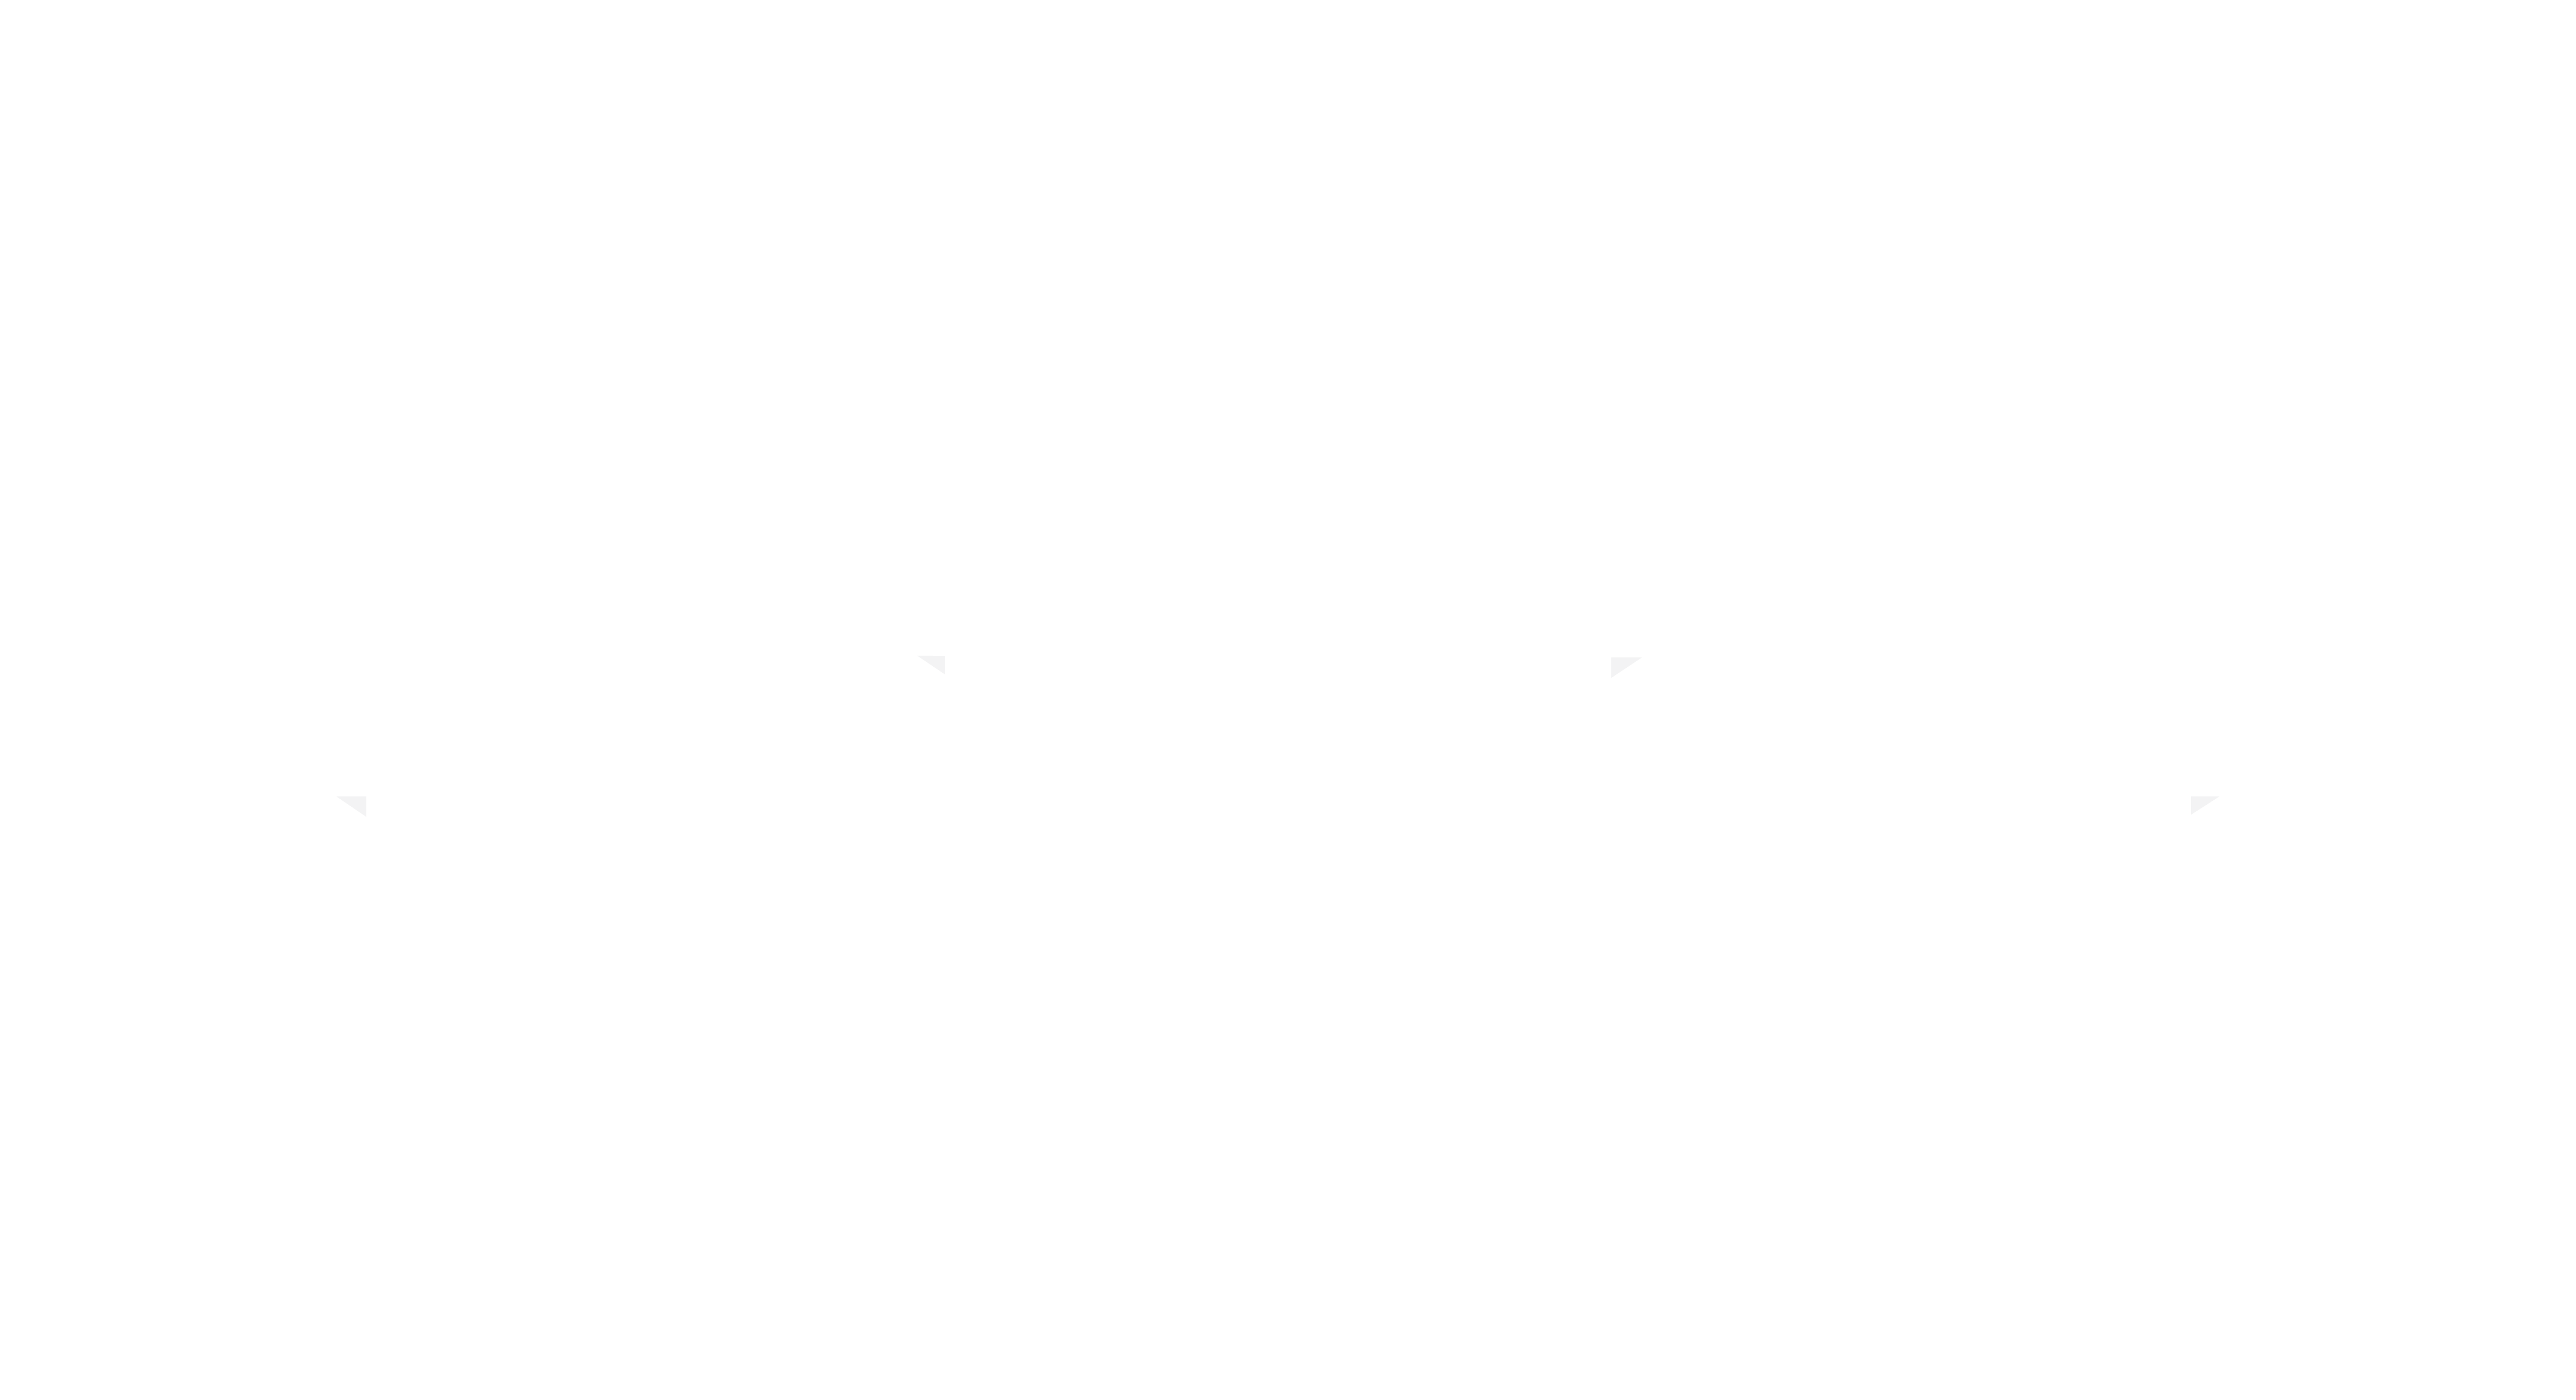 Chateau Palais Cardinal